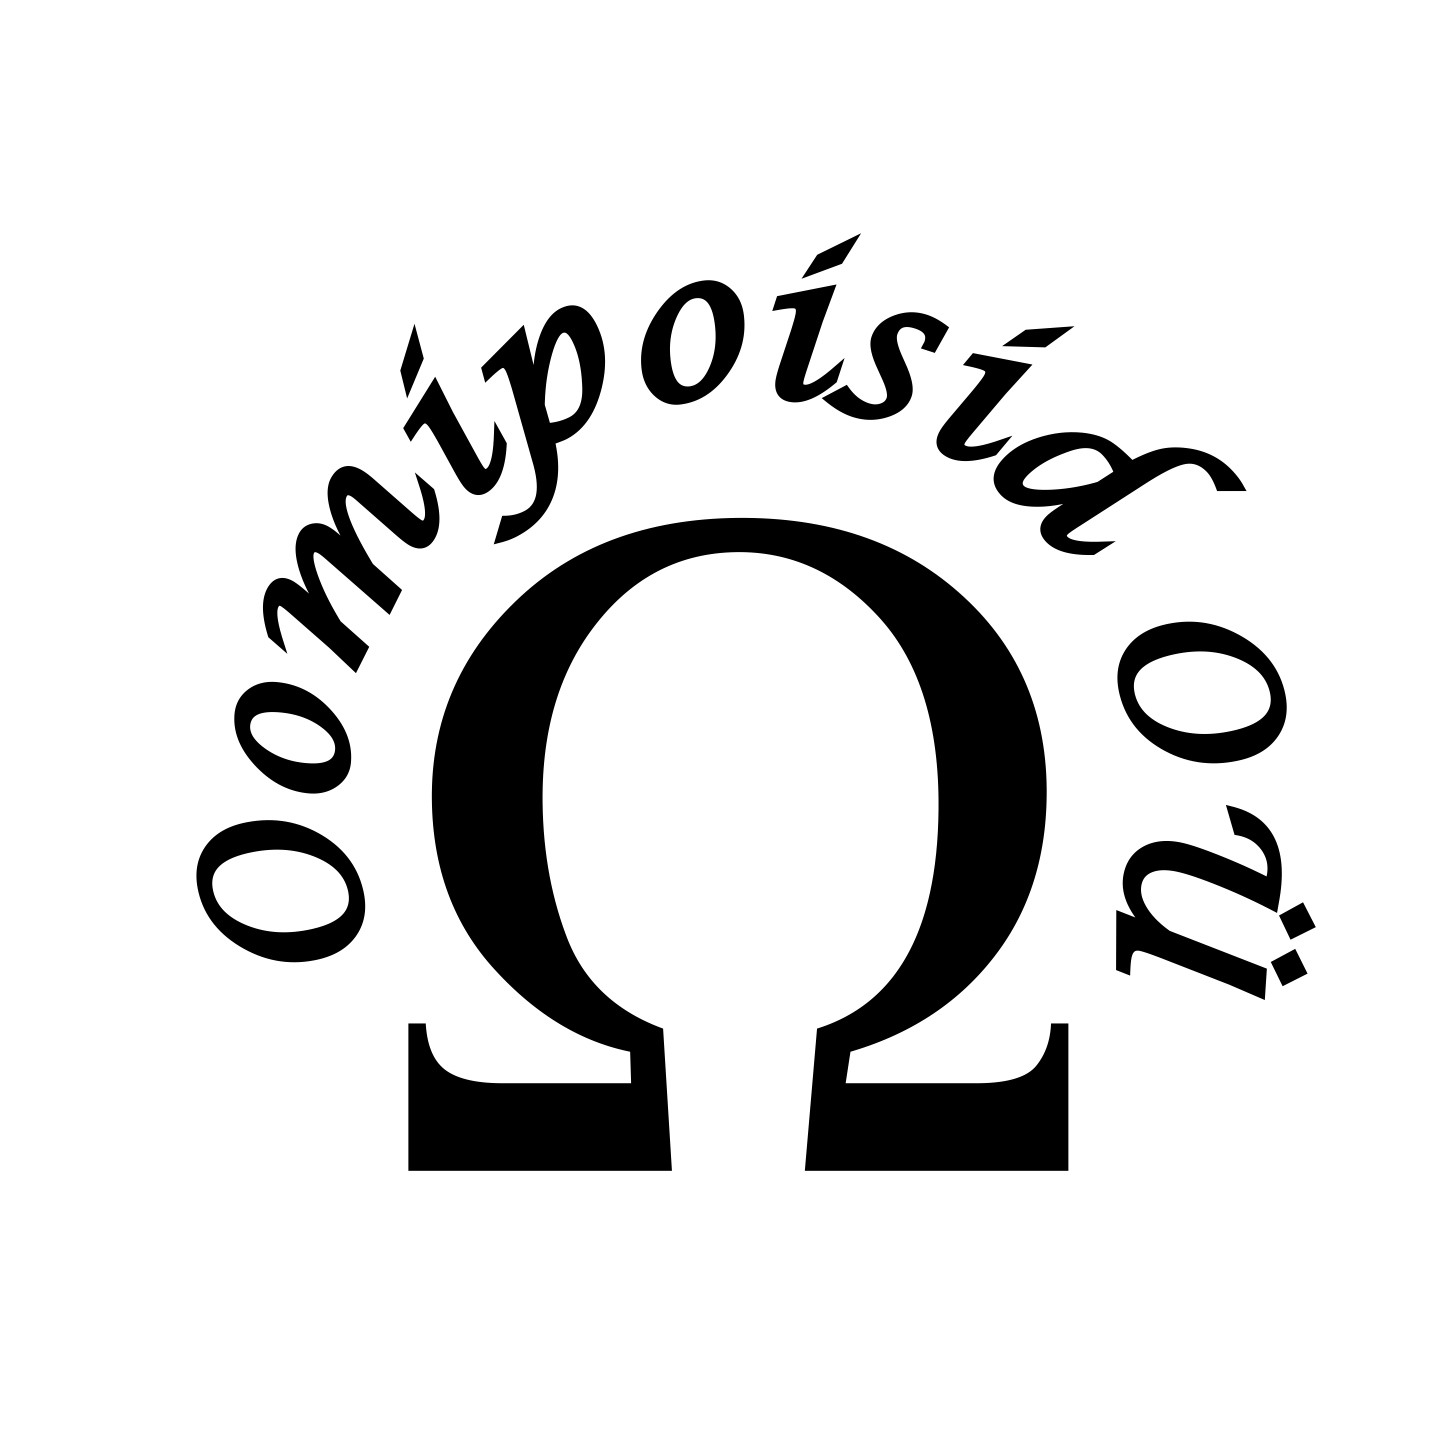 OOMIPOISID OÜ logo